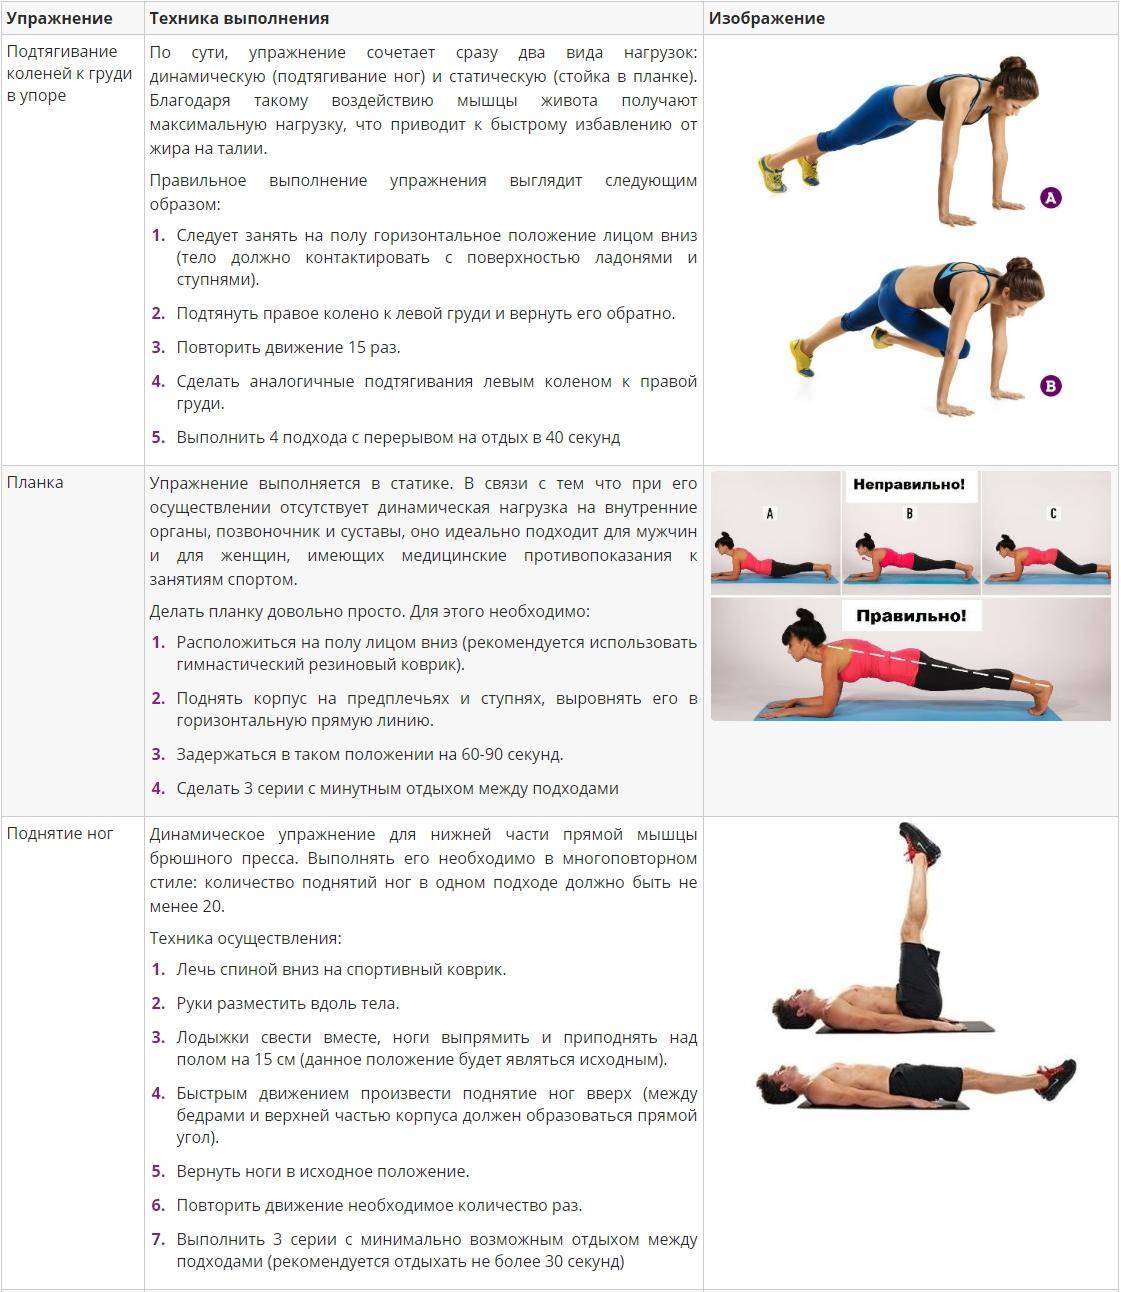 Эффективные упражнения для сжигания жира на животе | rulebody.ru — правила тела